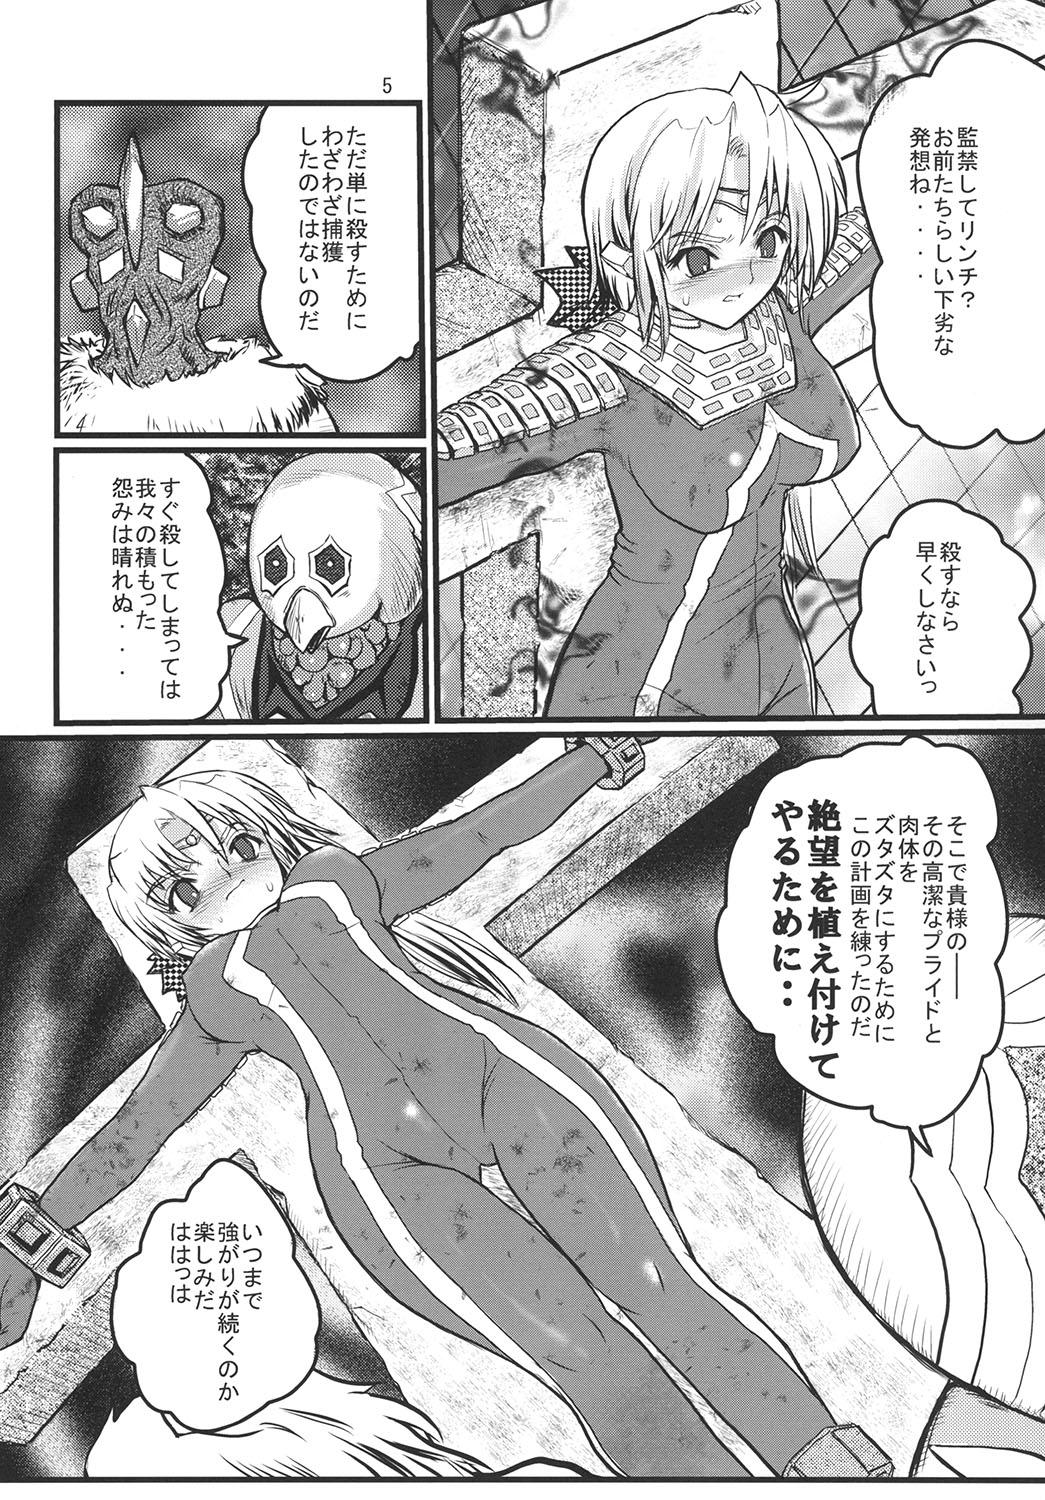 Camporn Ultra Nanako Zettaizetsumei! Vol. 2 - Ultraman Culo - Page 5